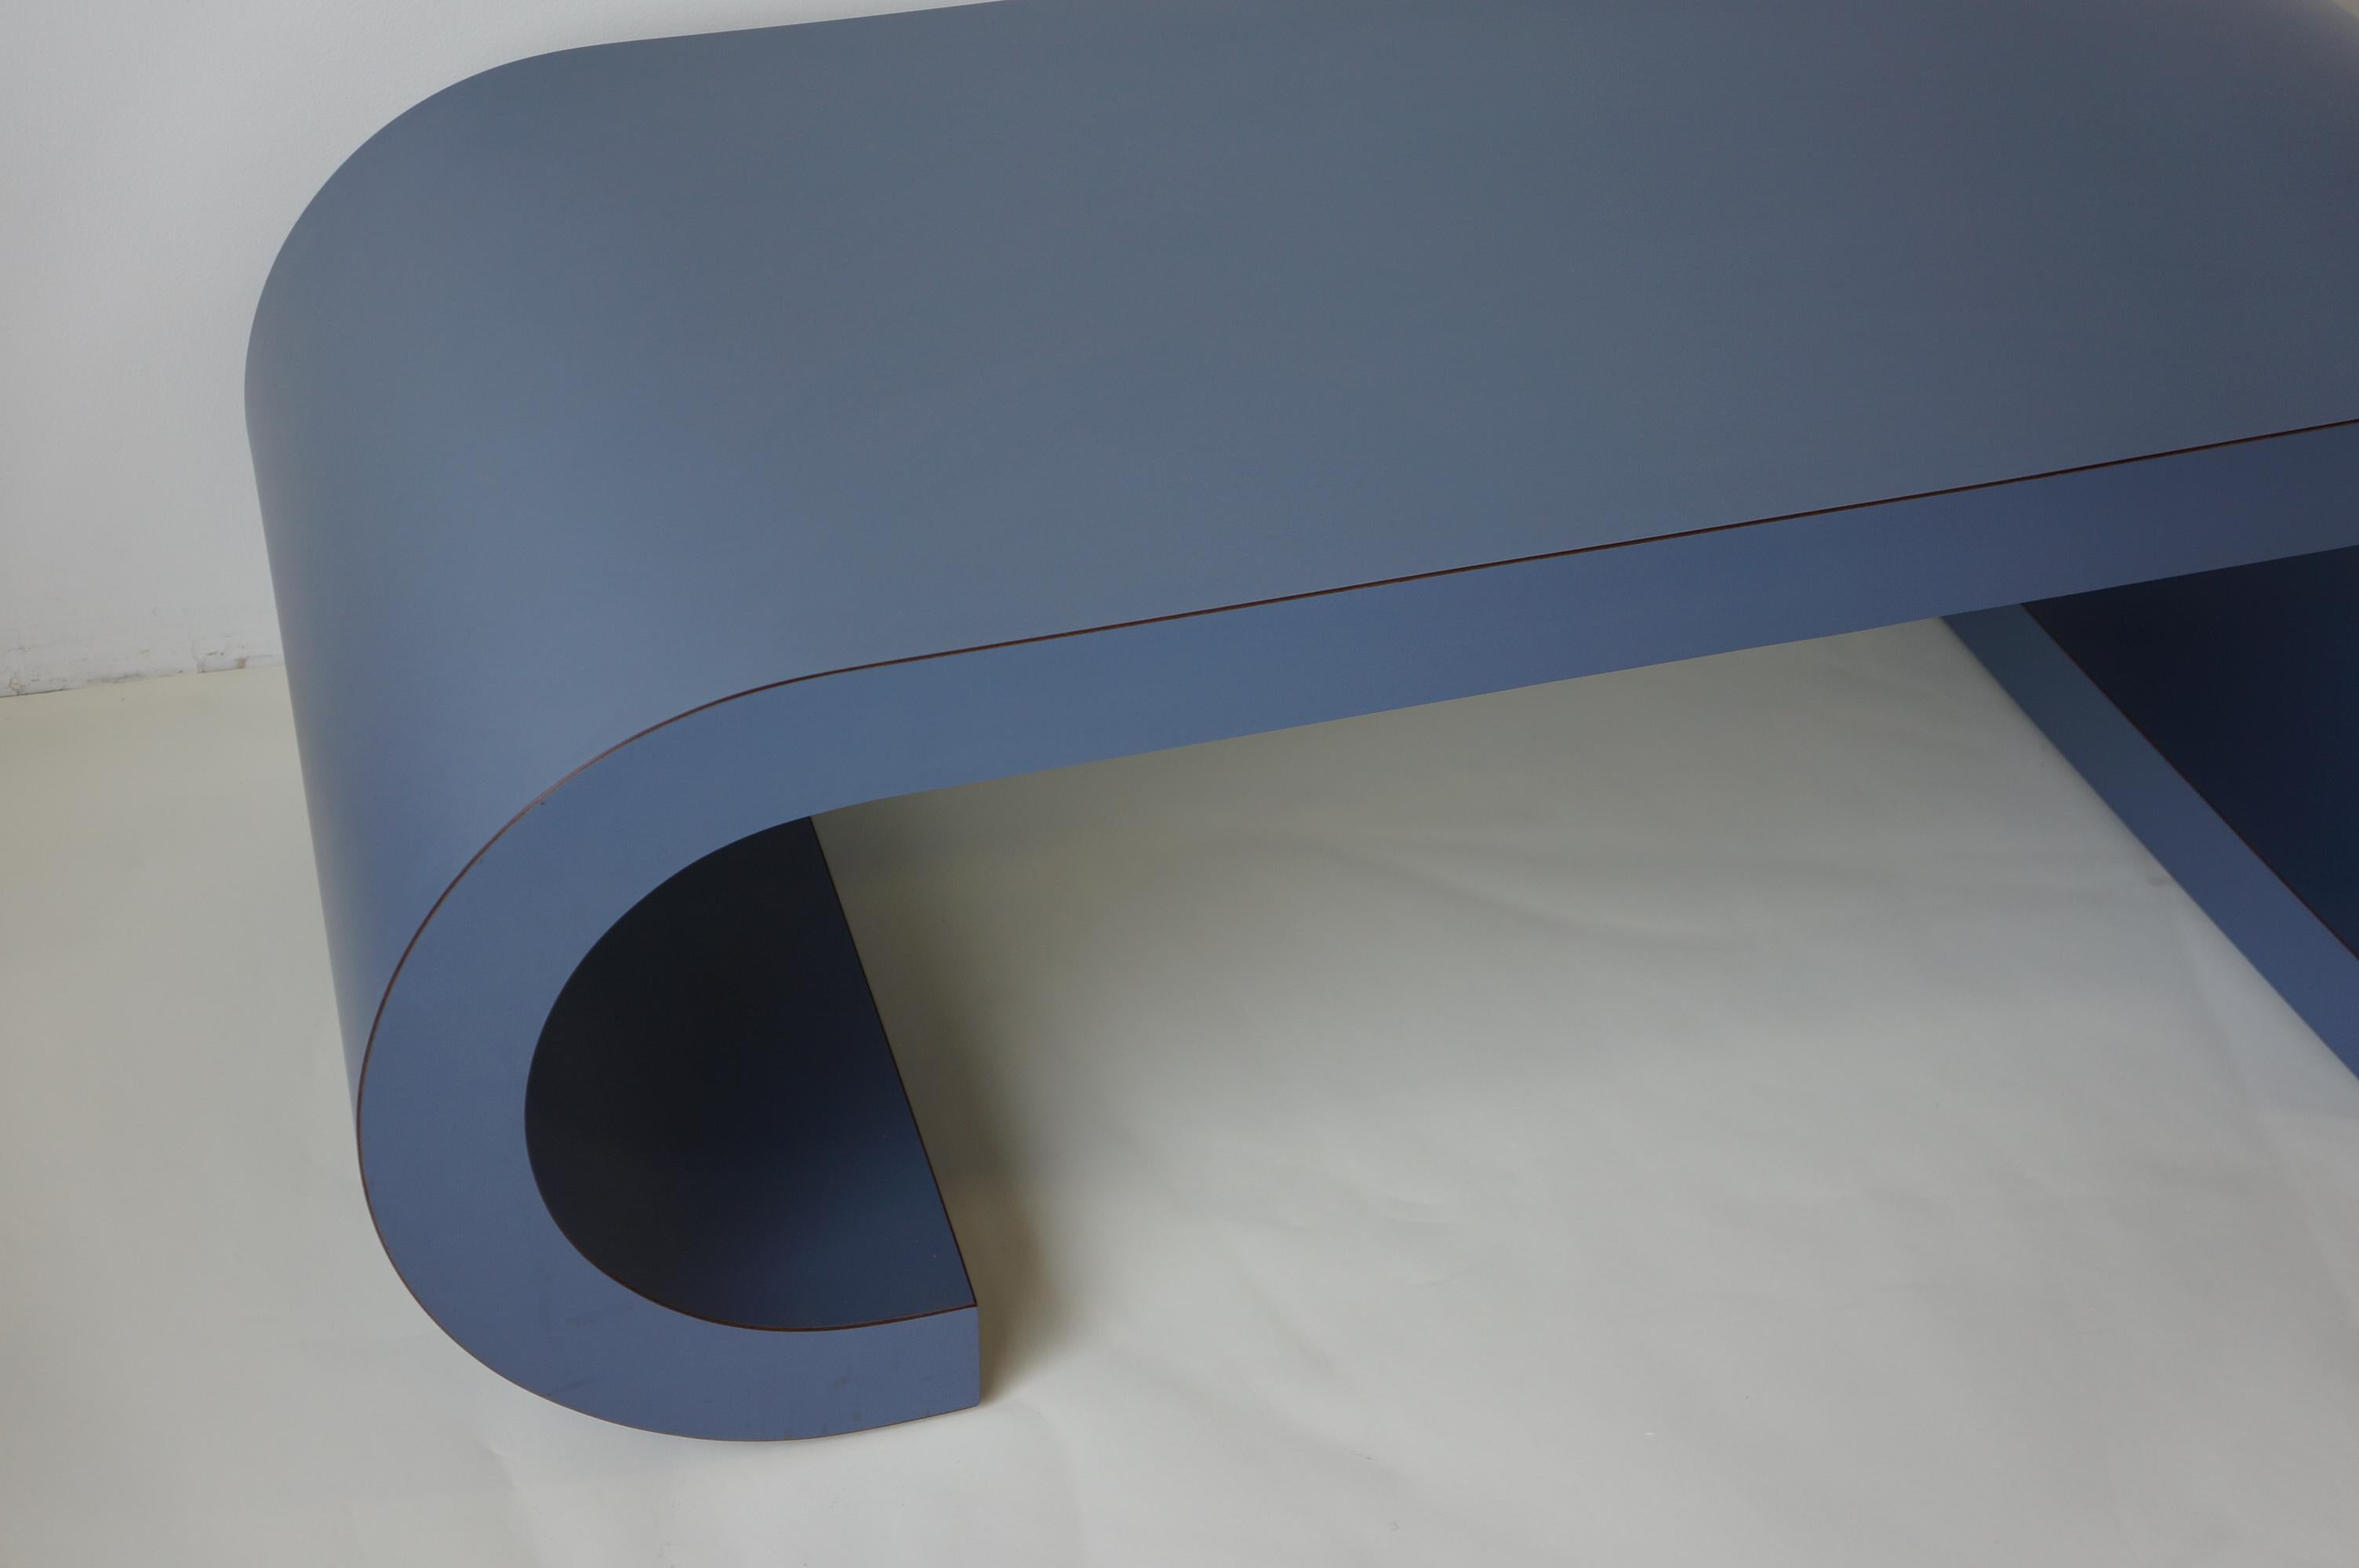 Etonnante table basse postmoderne faite sur mesure, table à rouleau dans une couleur magnifique. Cette table est stratifiée dans une belle couleur bleue. Il a été construit sur mesure à la fin des années 1980 et ce design/One reste intemporel, tant